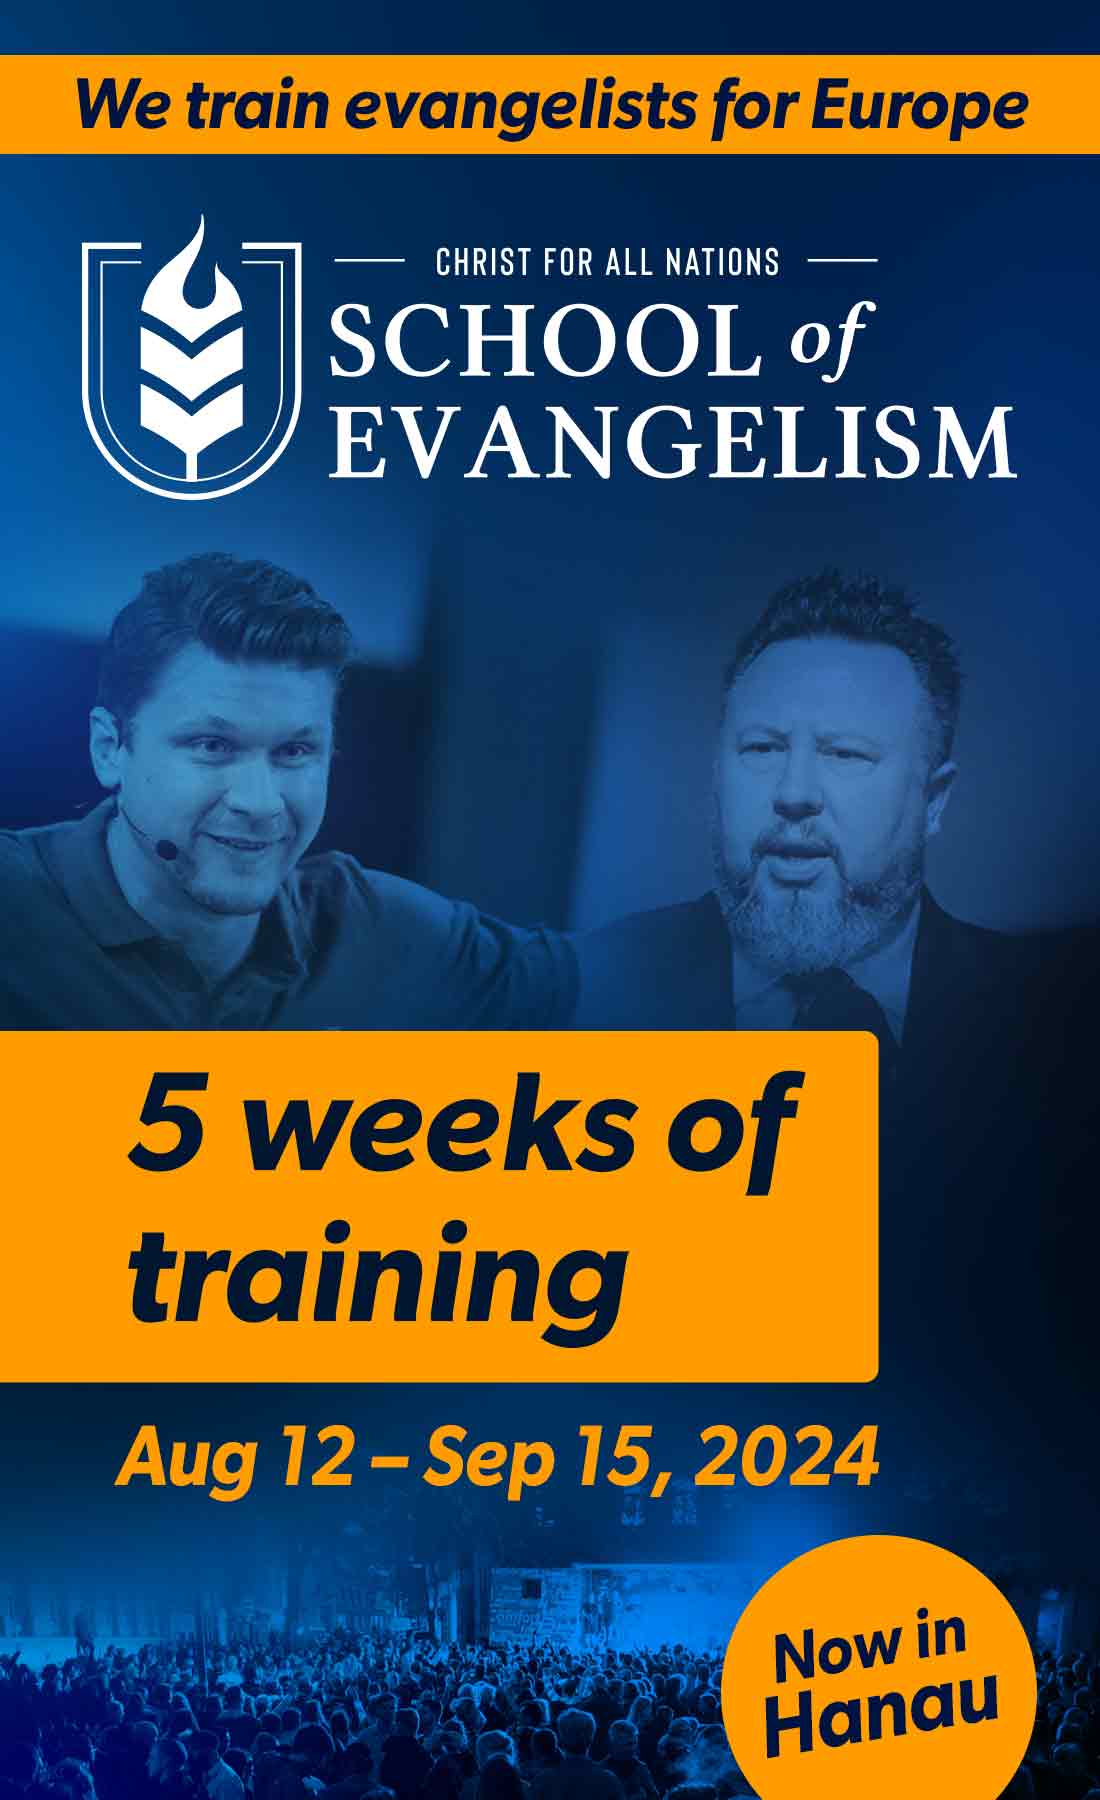 School of Evangelism with Daniel Kolenda and Levi Lutz